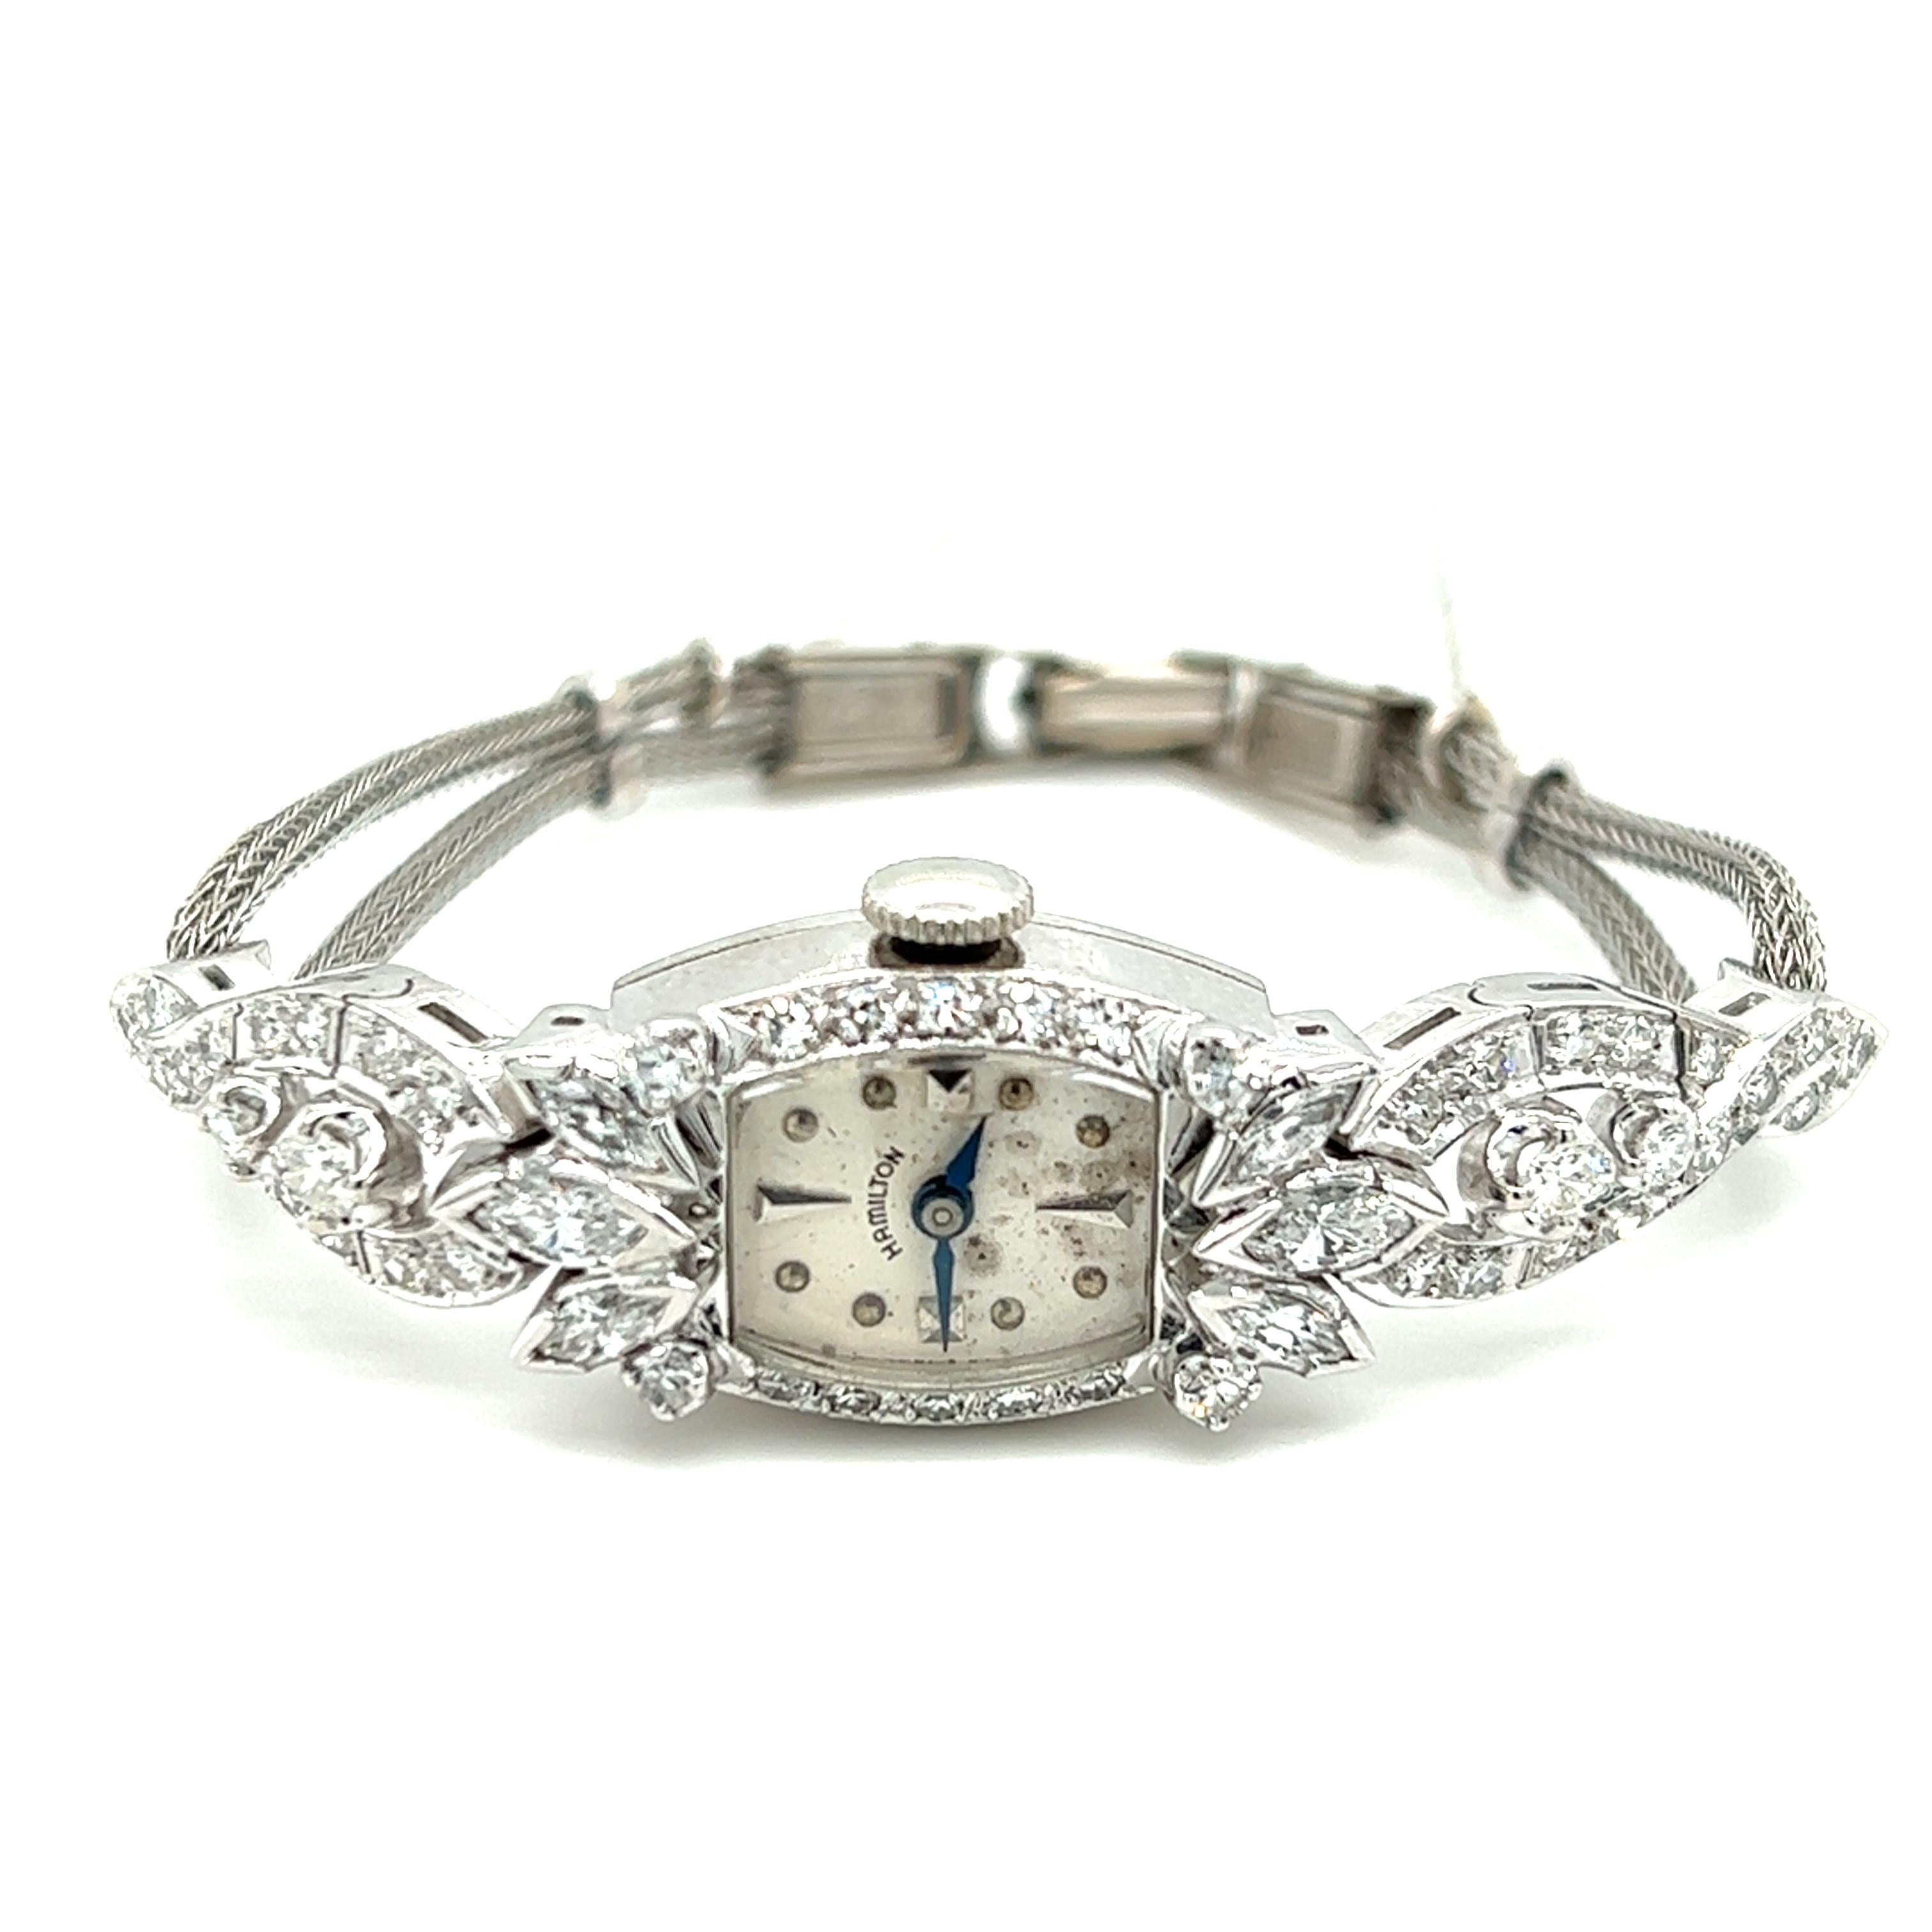 Taille brillant Hamilton Montre-bracelet en or blanc et diamants pour femmes, c. 1960